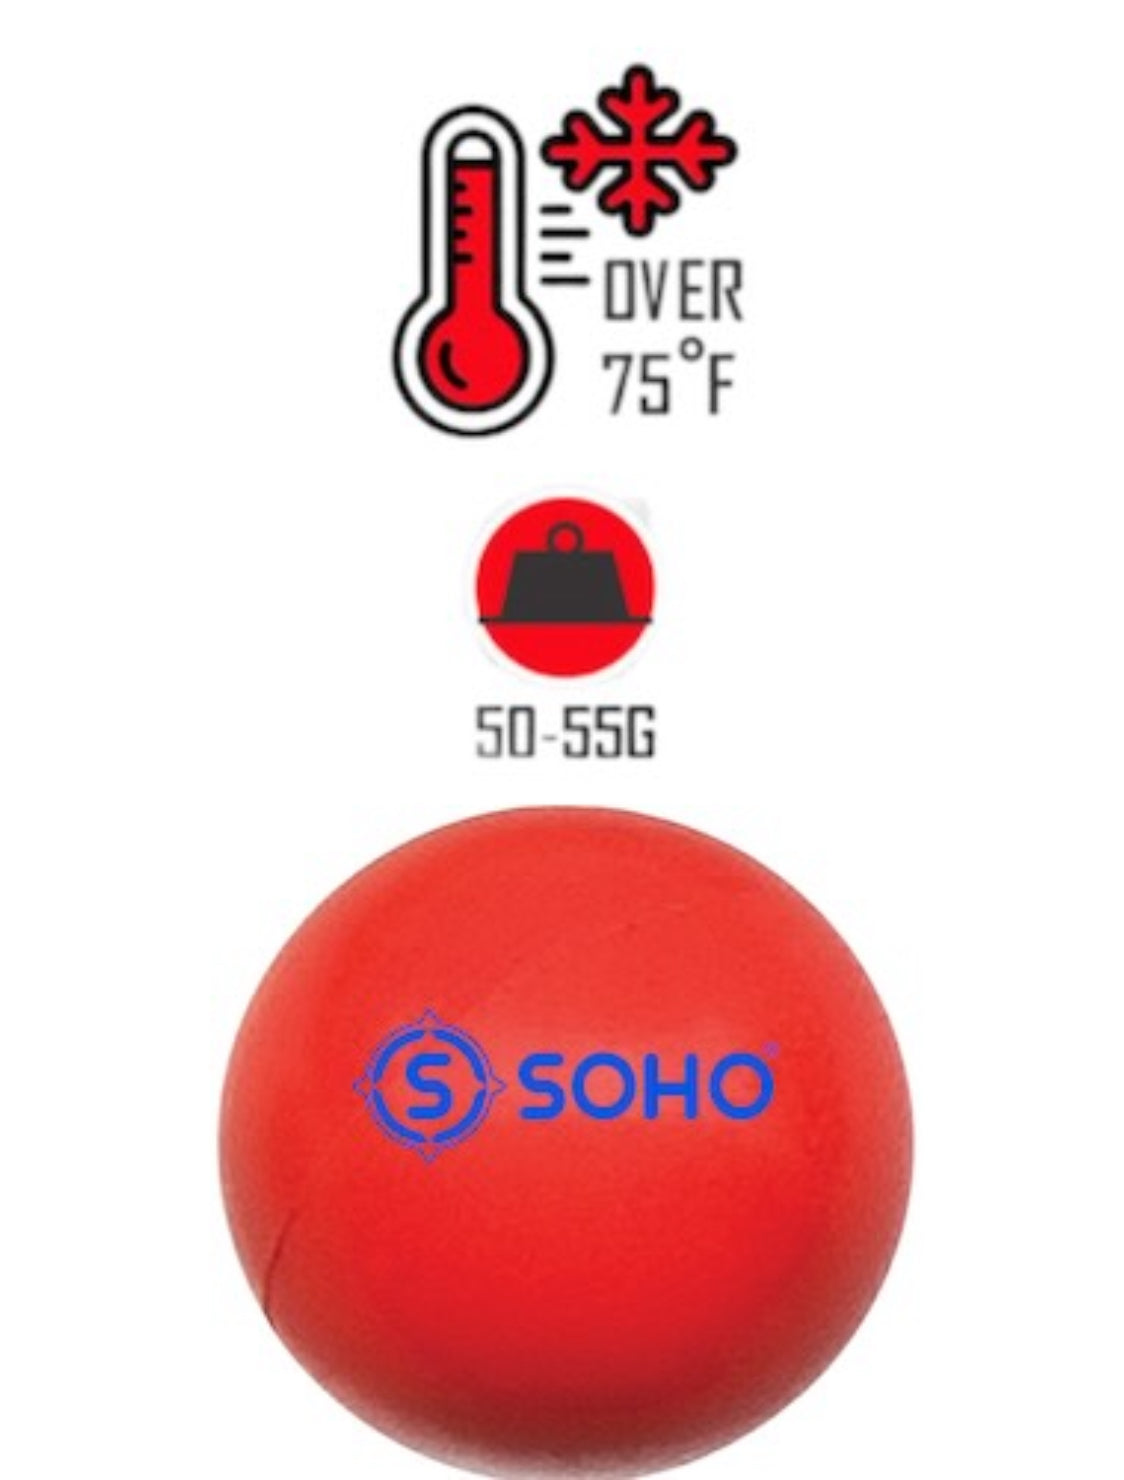 SOHO HD Hockey Ball (Bulk Orders Available)